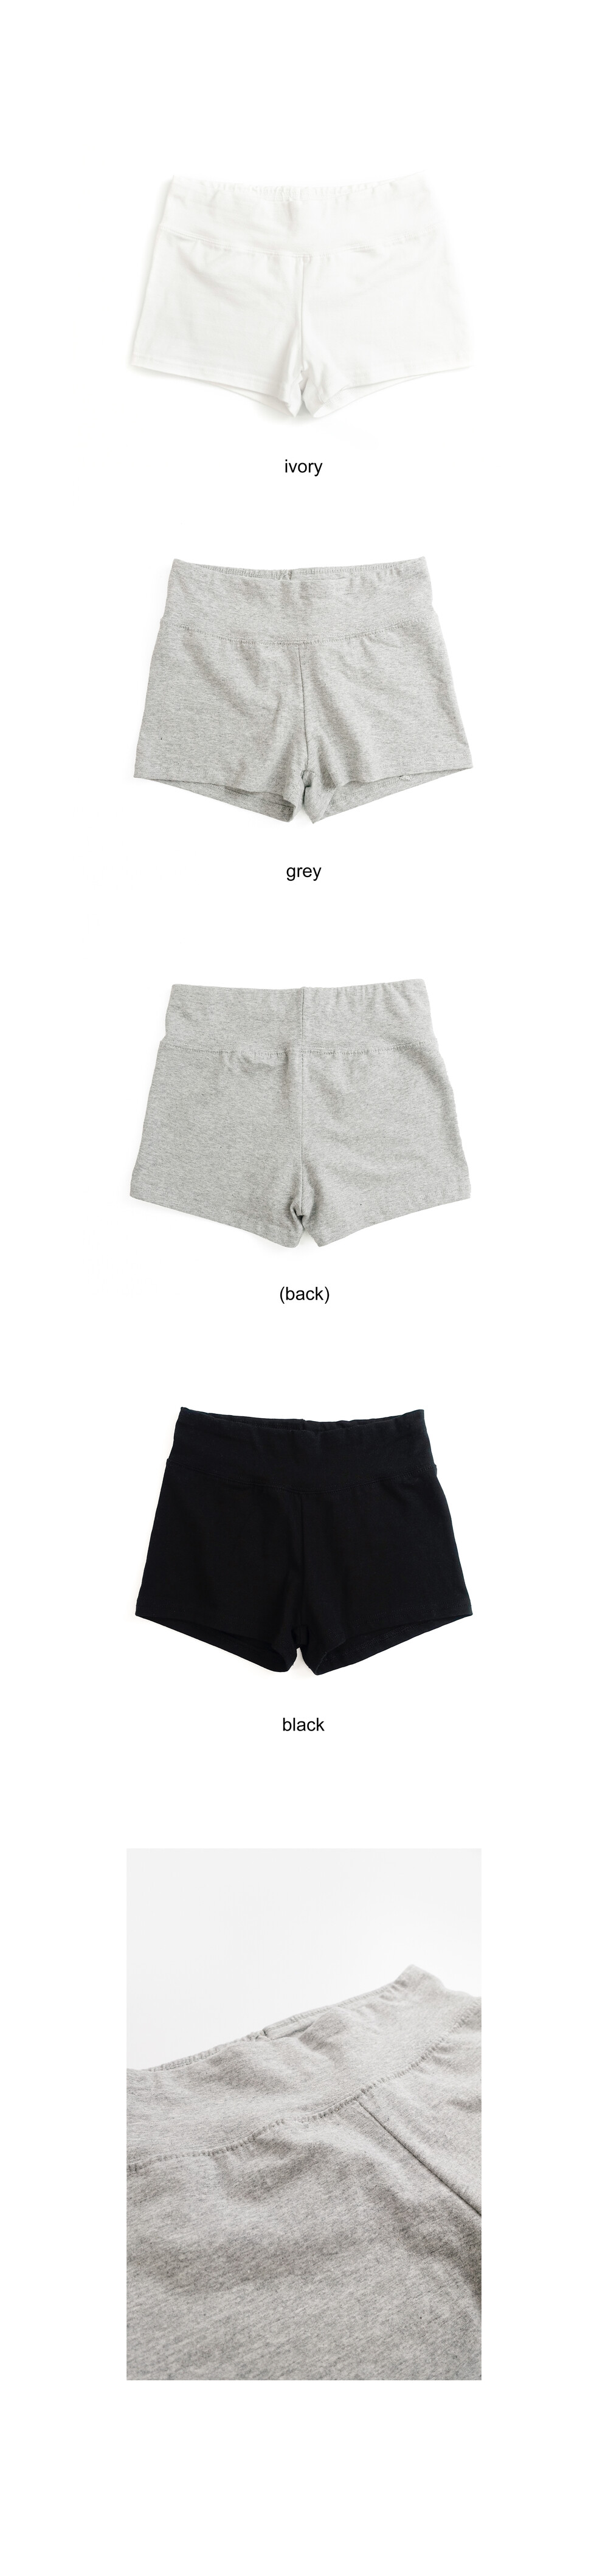 basic inner shorts